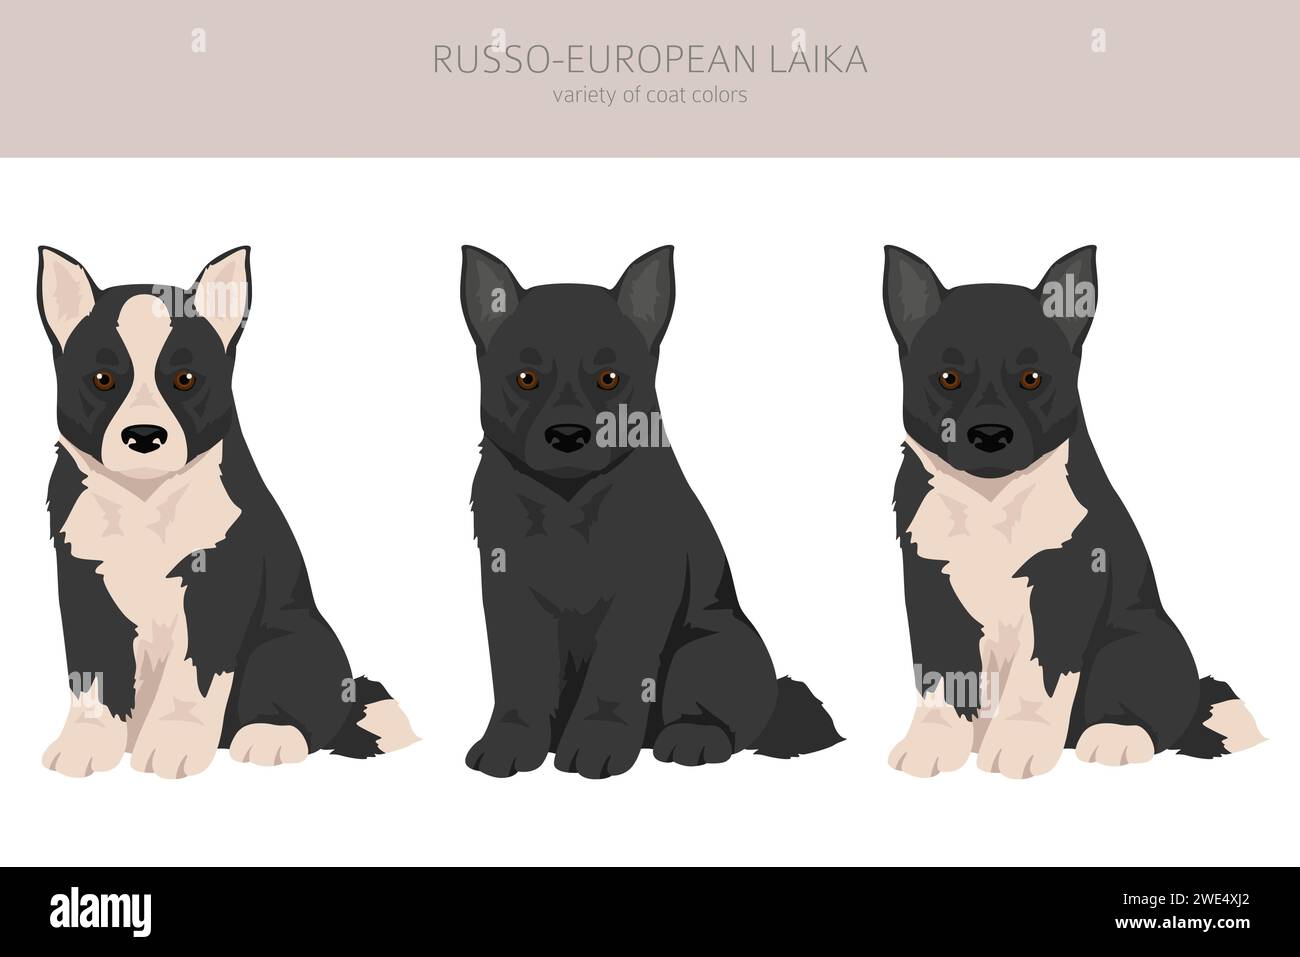 Clipart russo-europea Laika cucciolo. Tutti i colori del rivestimento sono impostati. Infografica sulle caratteristiche di tutte le razze di cane. Illustrazione vettoriale Illustrazione Vettoriale